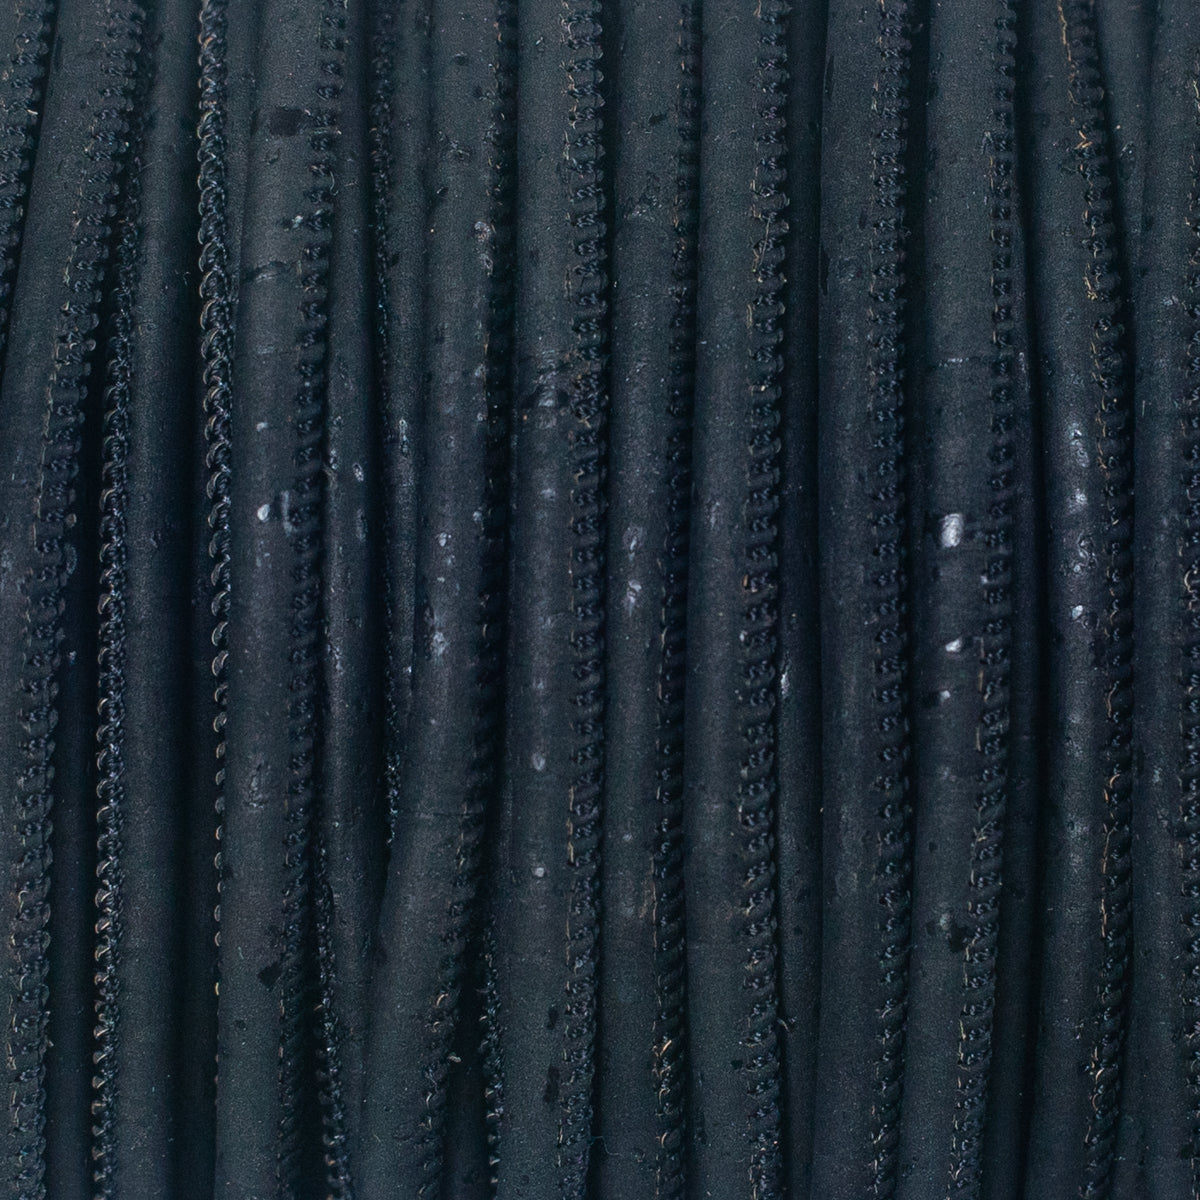 10 mètres de cordon en liège noir 5mm ficelle ronde COR-201 